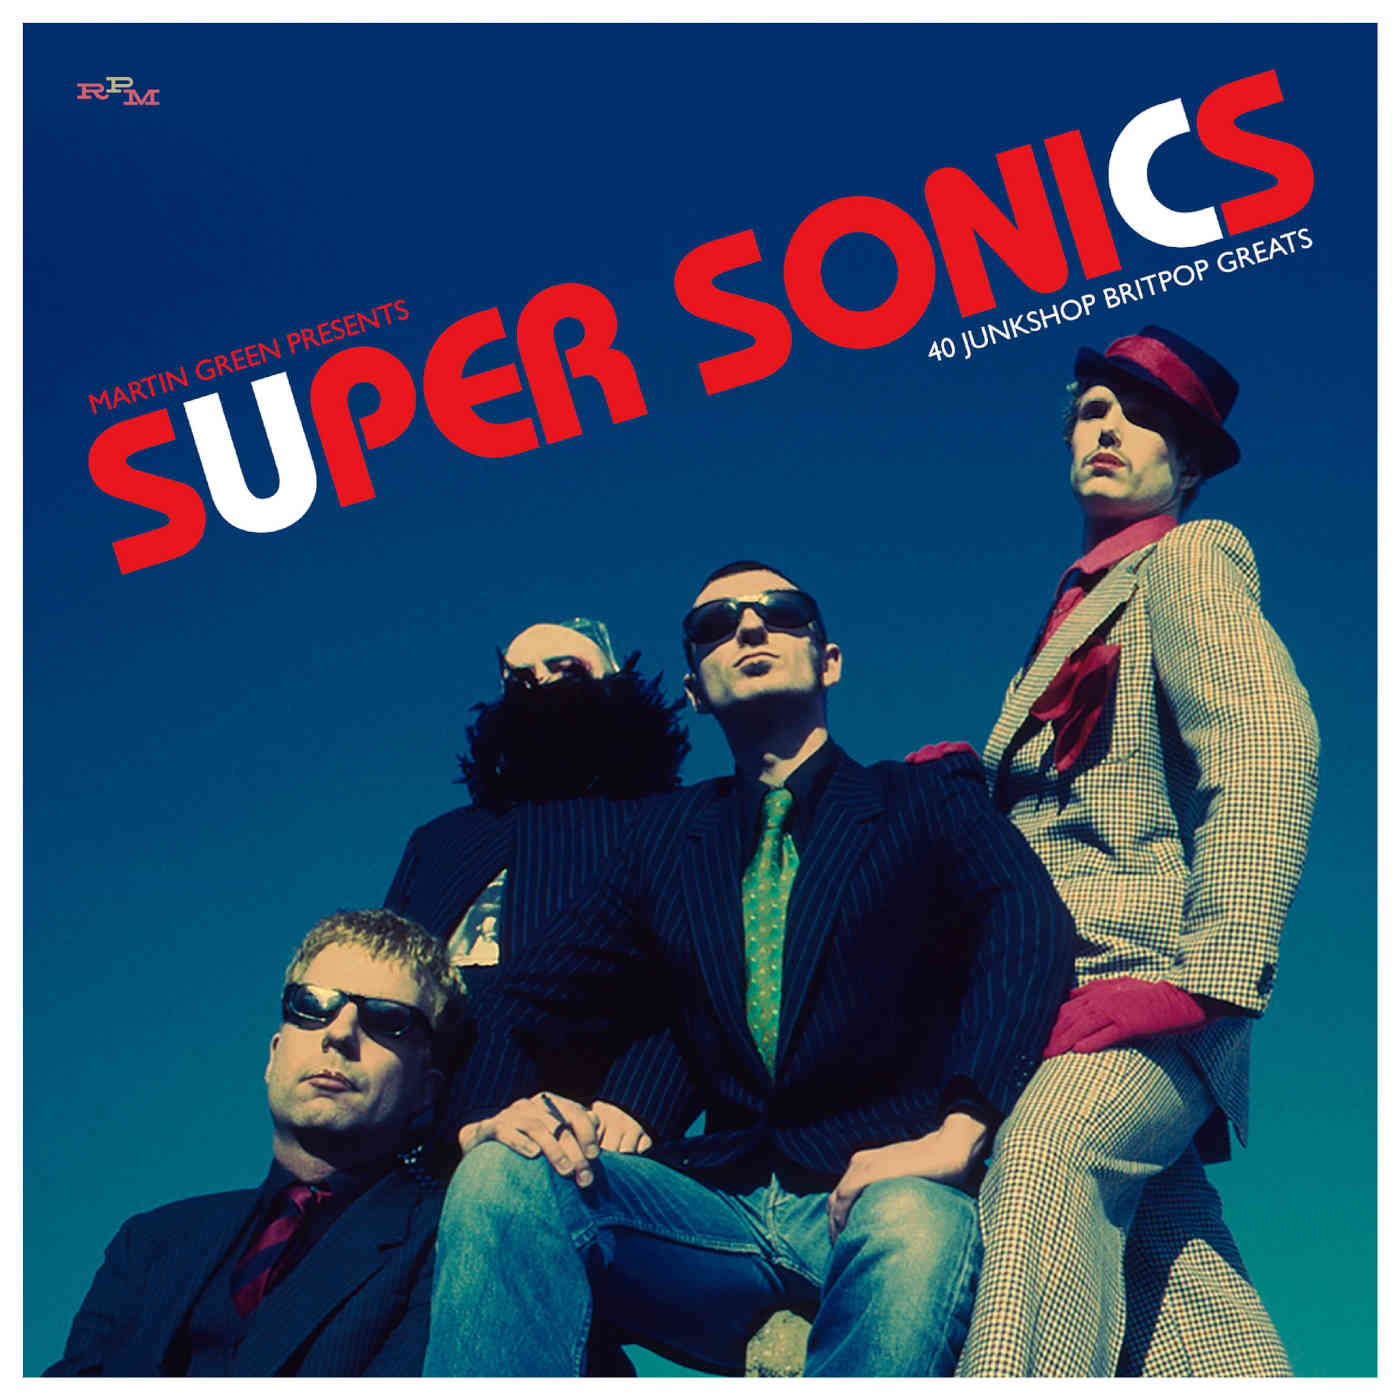 Martin Green Presents Super Sonics - 40 Junkshop Britpop Greats